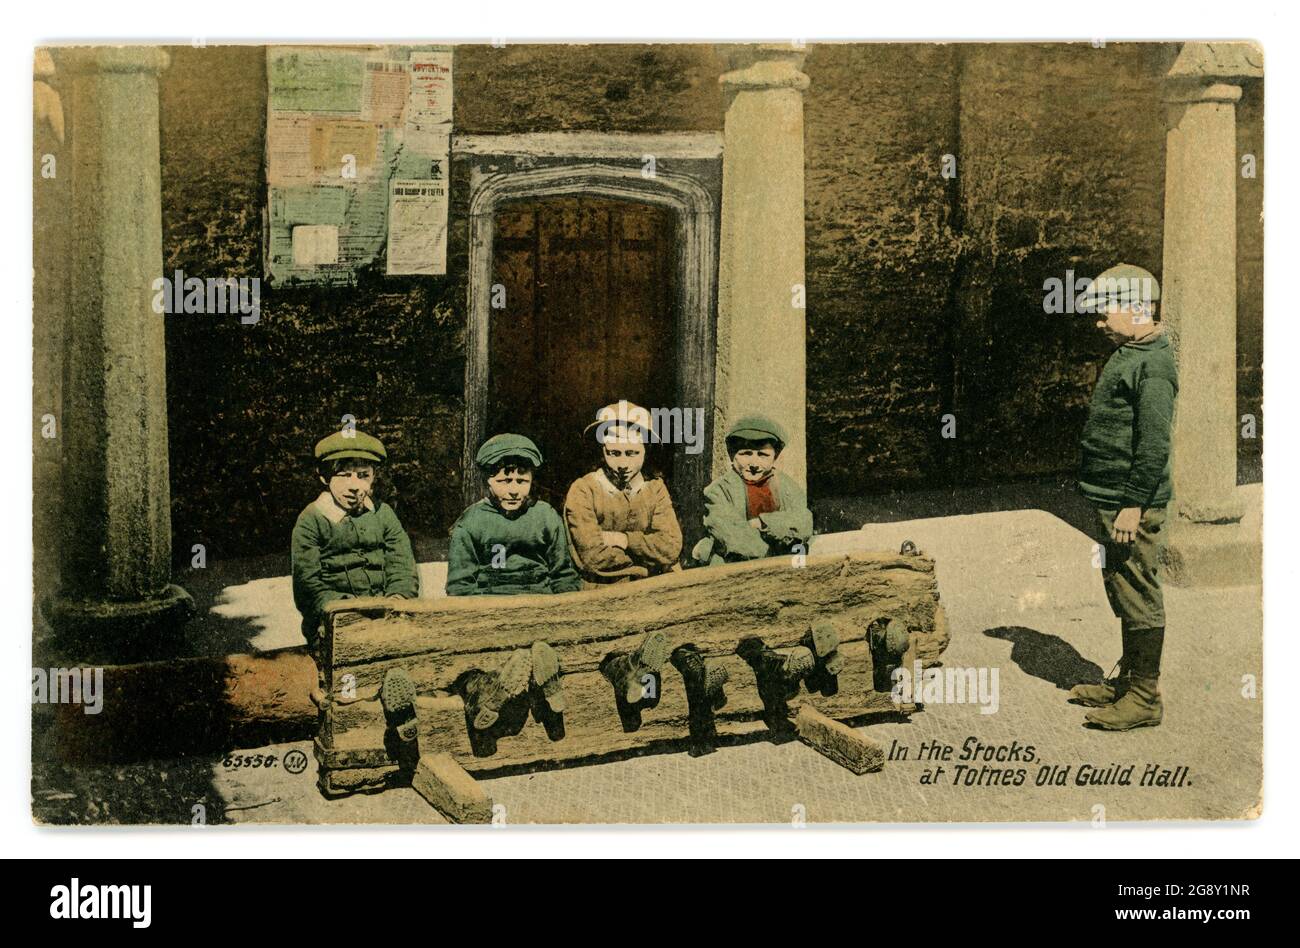 Tarjeta de felicitación tintada de principios de 1900 de niños jóvenes sentados en las existencias, una forma anticuada de castigo a través de la humillación del criminal, aunque posada para esta foto. Totnes Old Guild Hall, Devon, Reino Unido publicado en 1913 Foto de stock